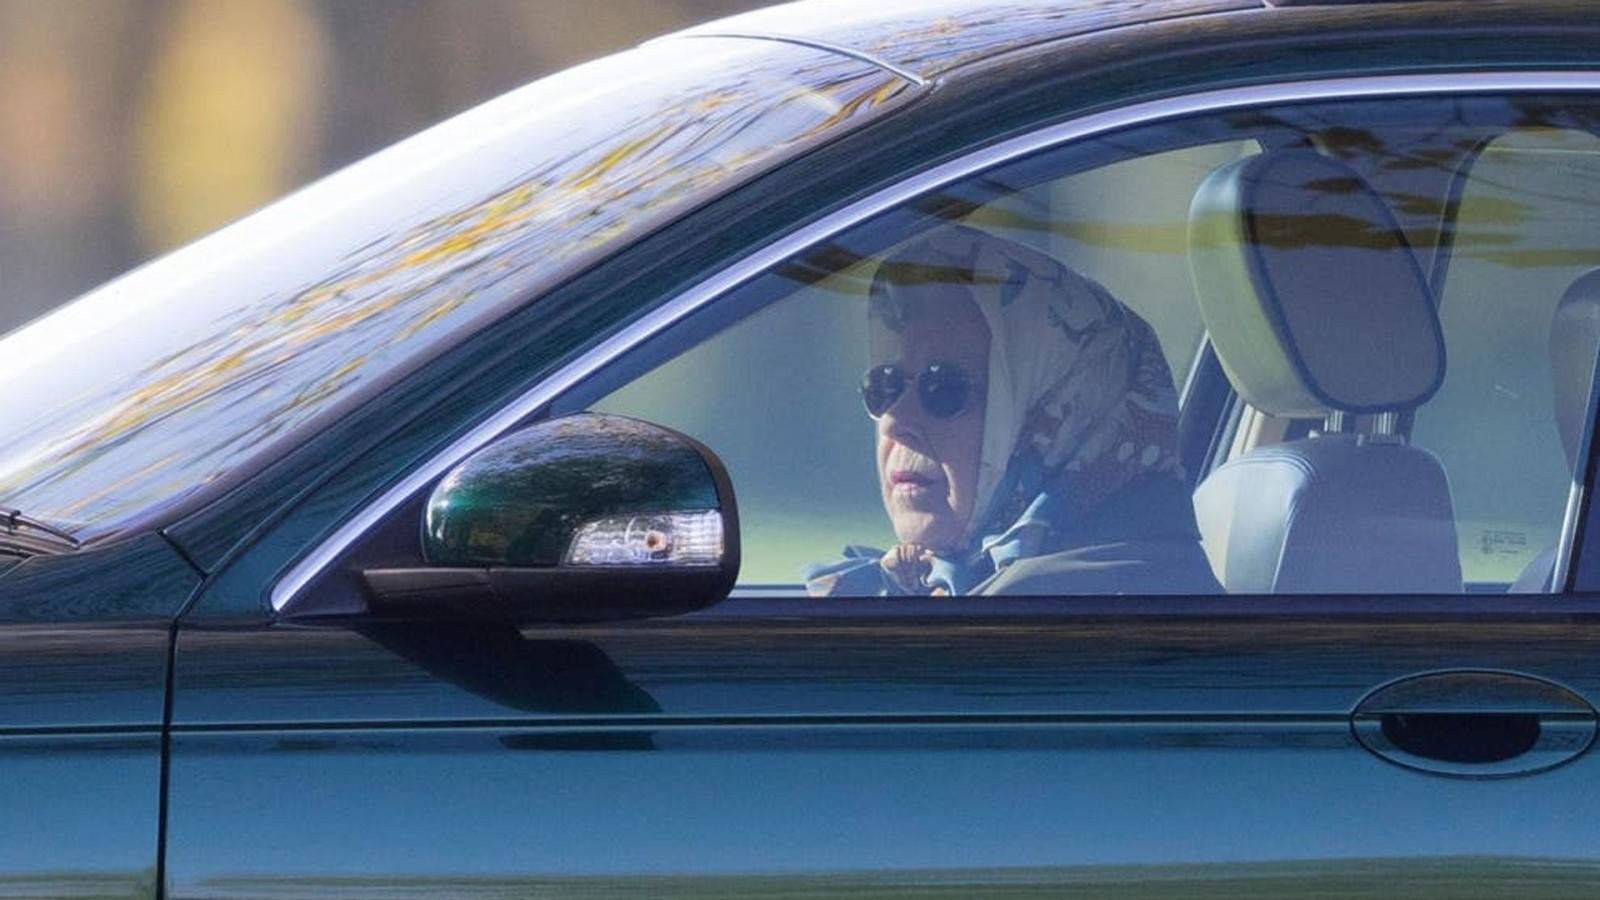 Βγαίνει σε δημοπρασία το αγαπημένο αυτοκίνητο της Βασίλισσας Ελισάβετ